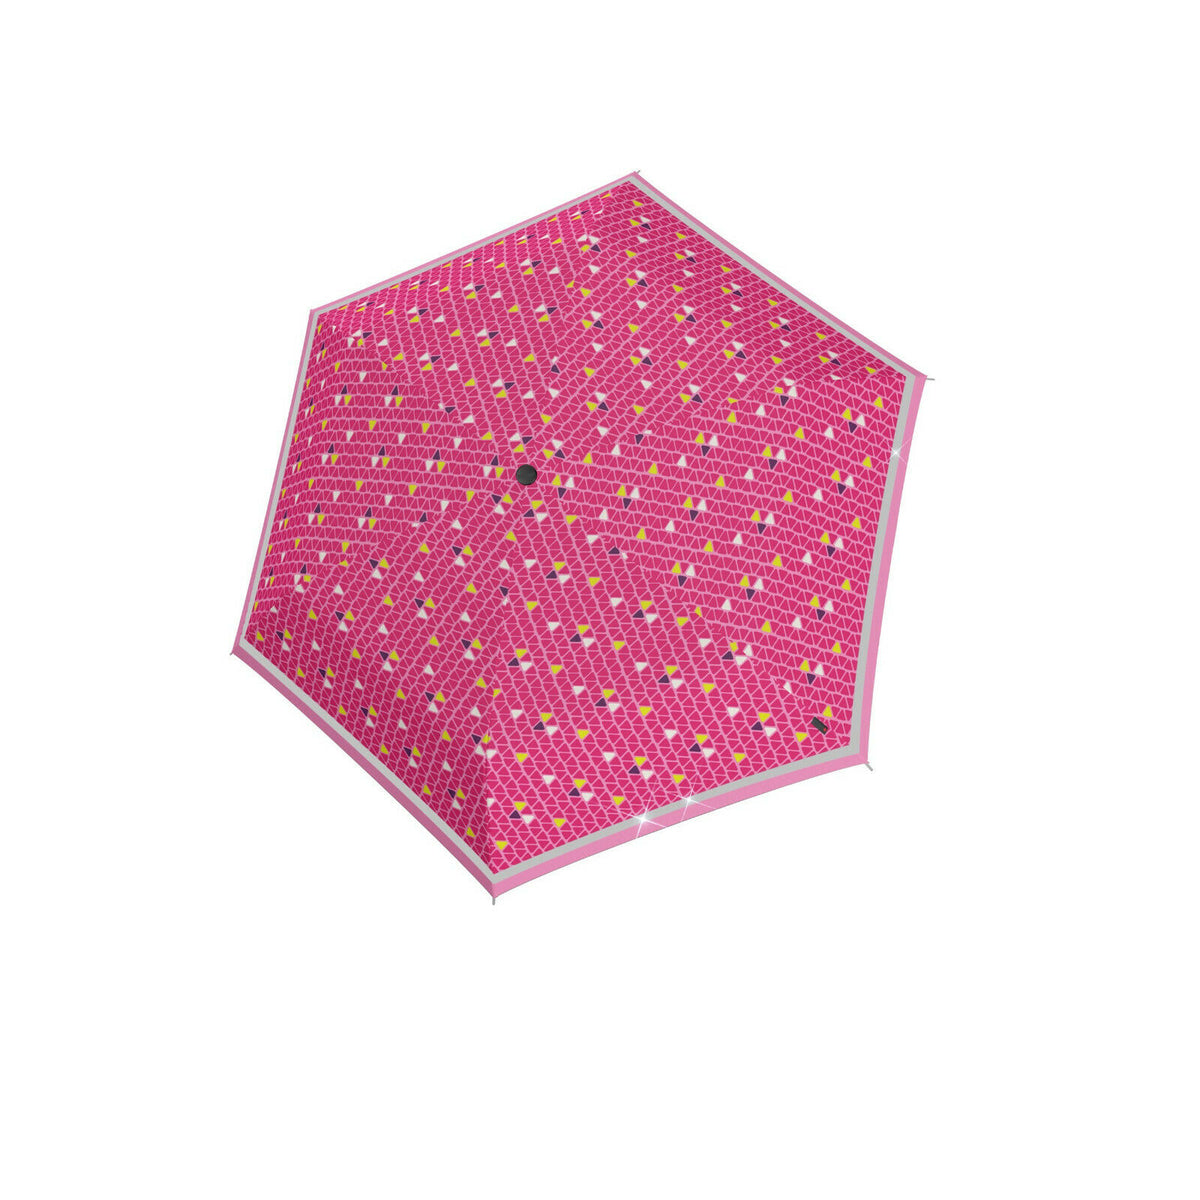 Kinder tr Knirps Taschenschirm Regenschirm Schirm Rookie reflektierend